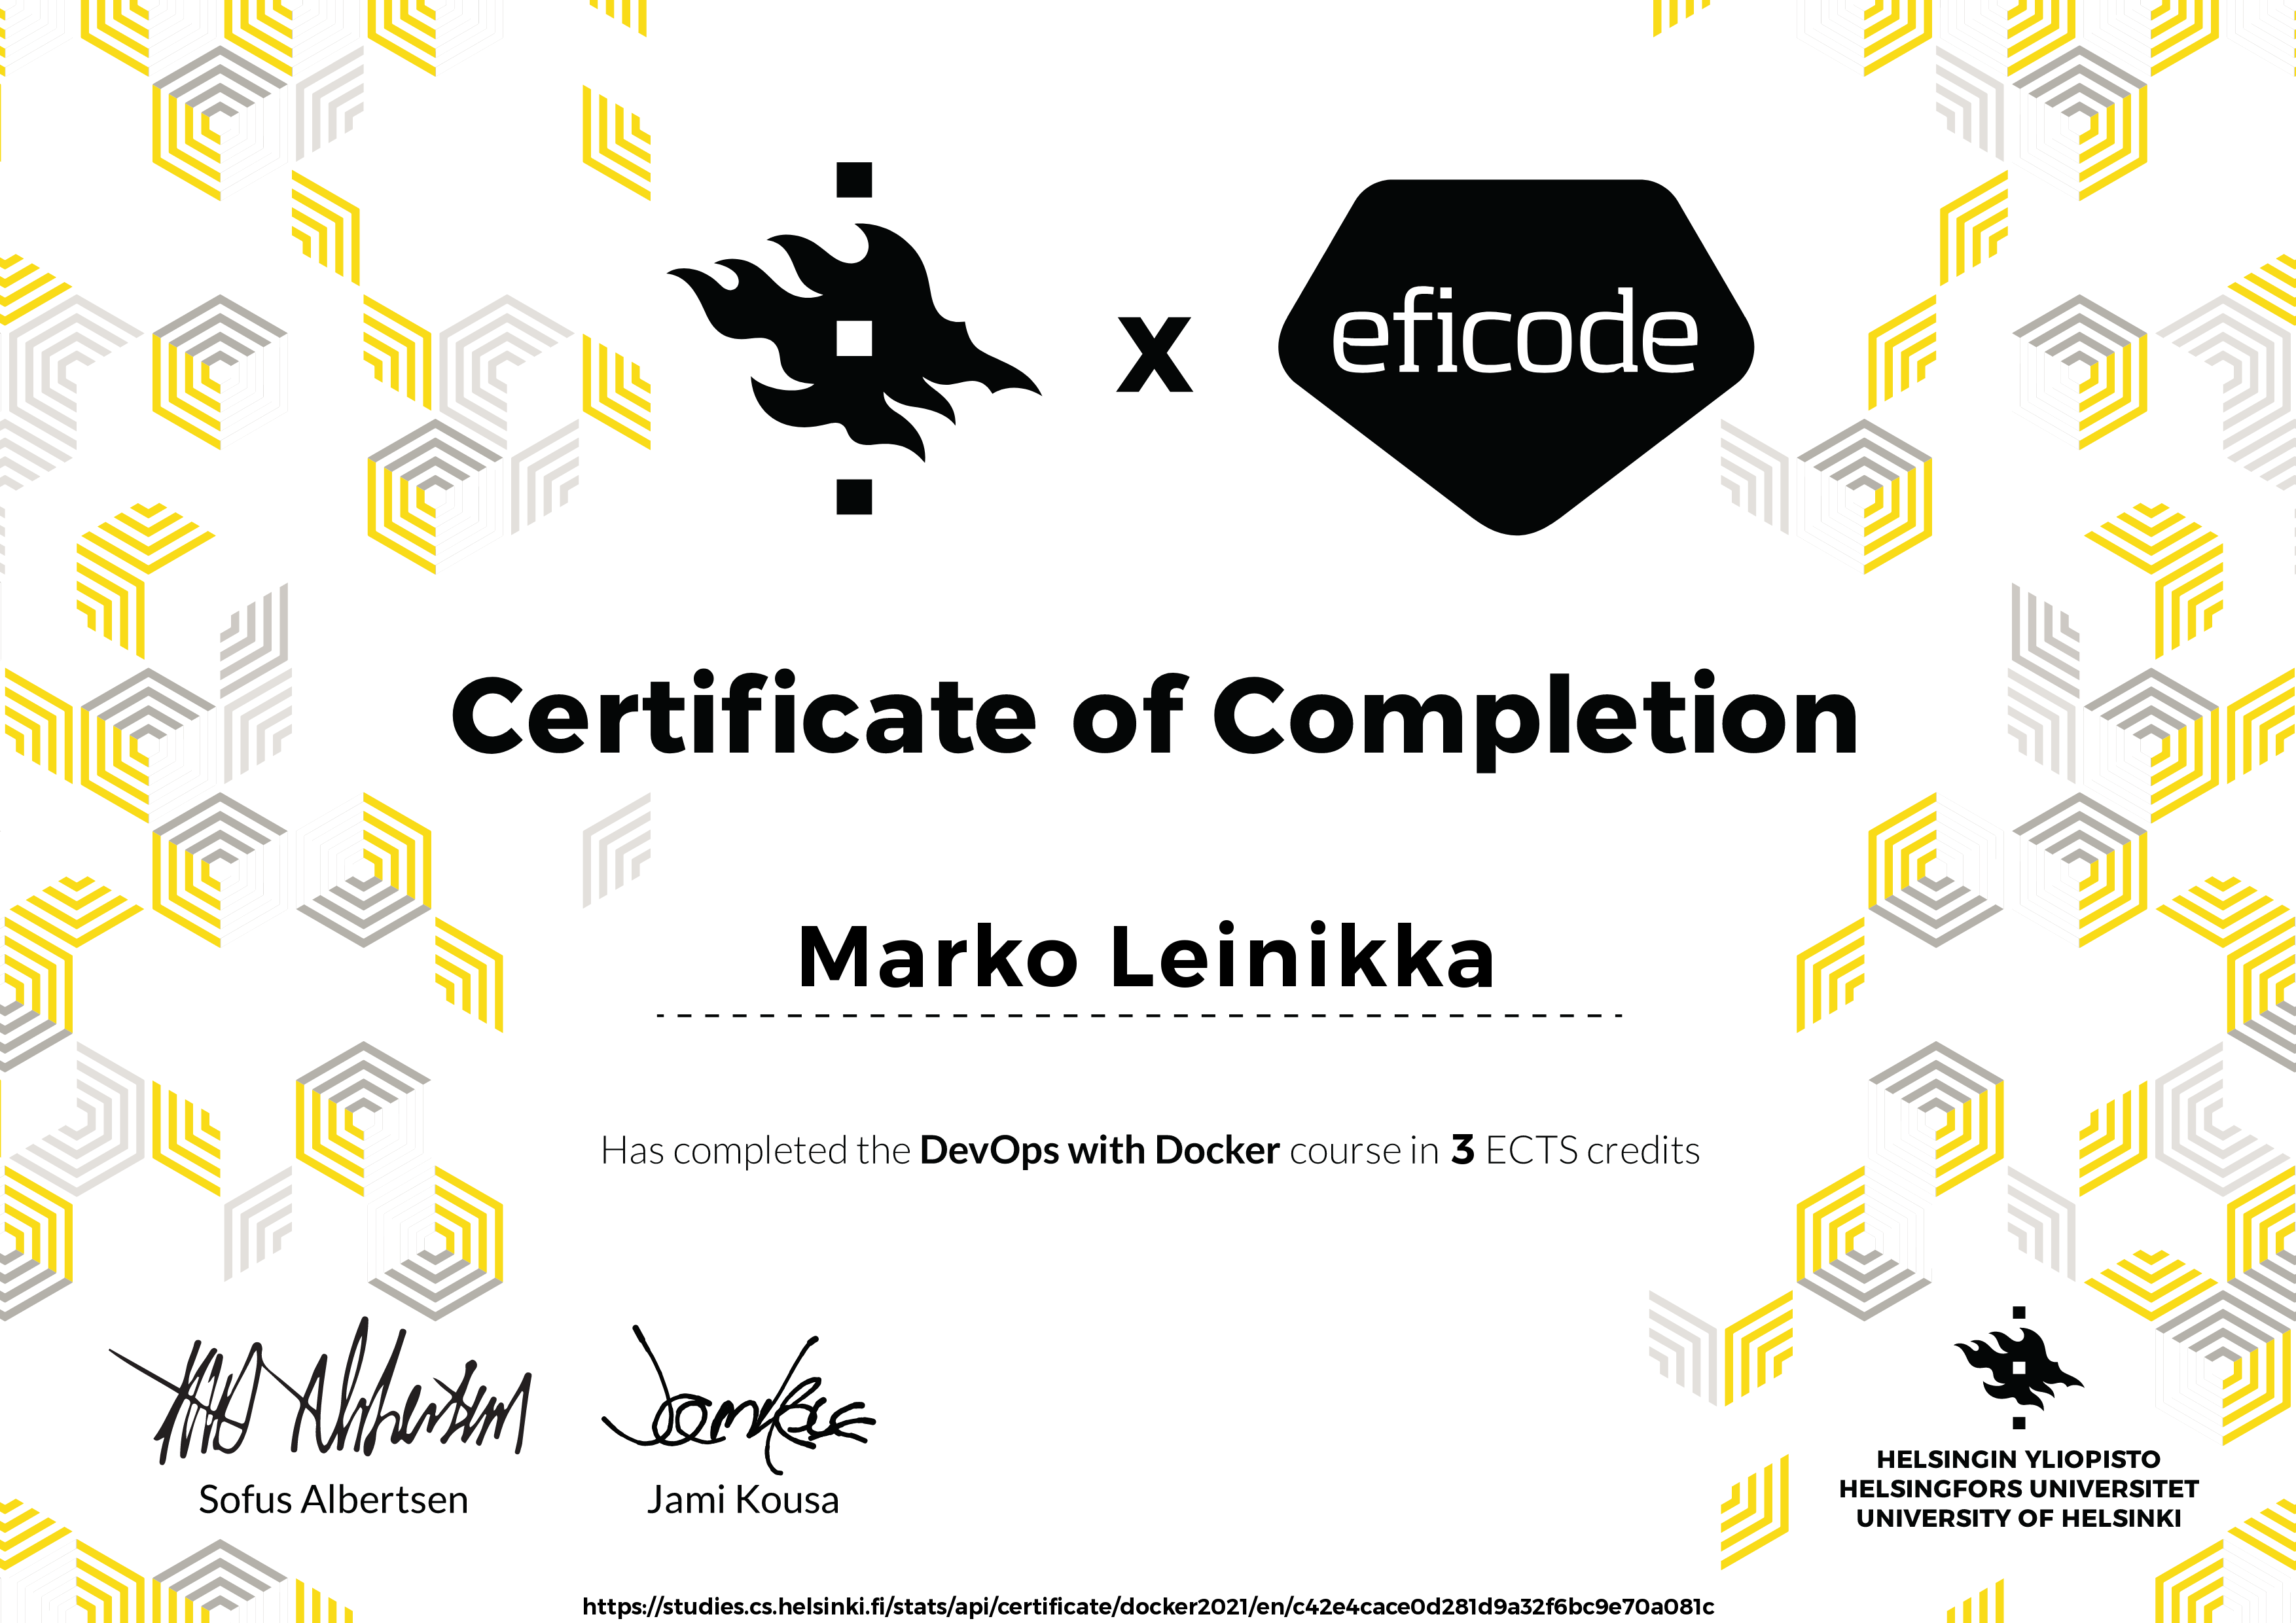 DevOps with Docker course certificate